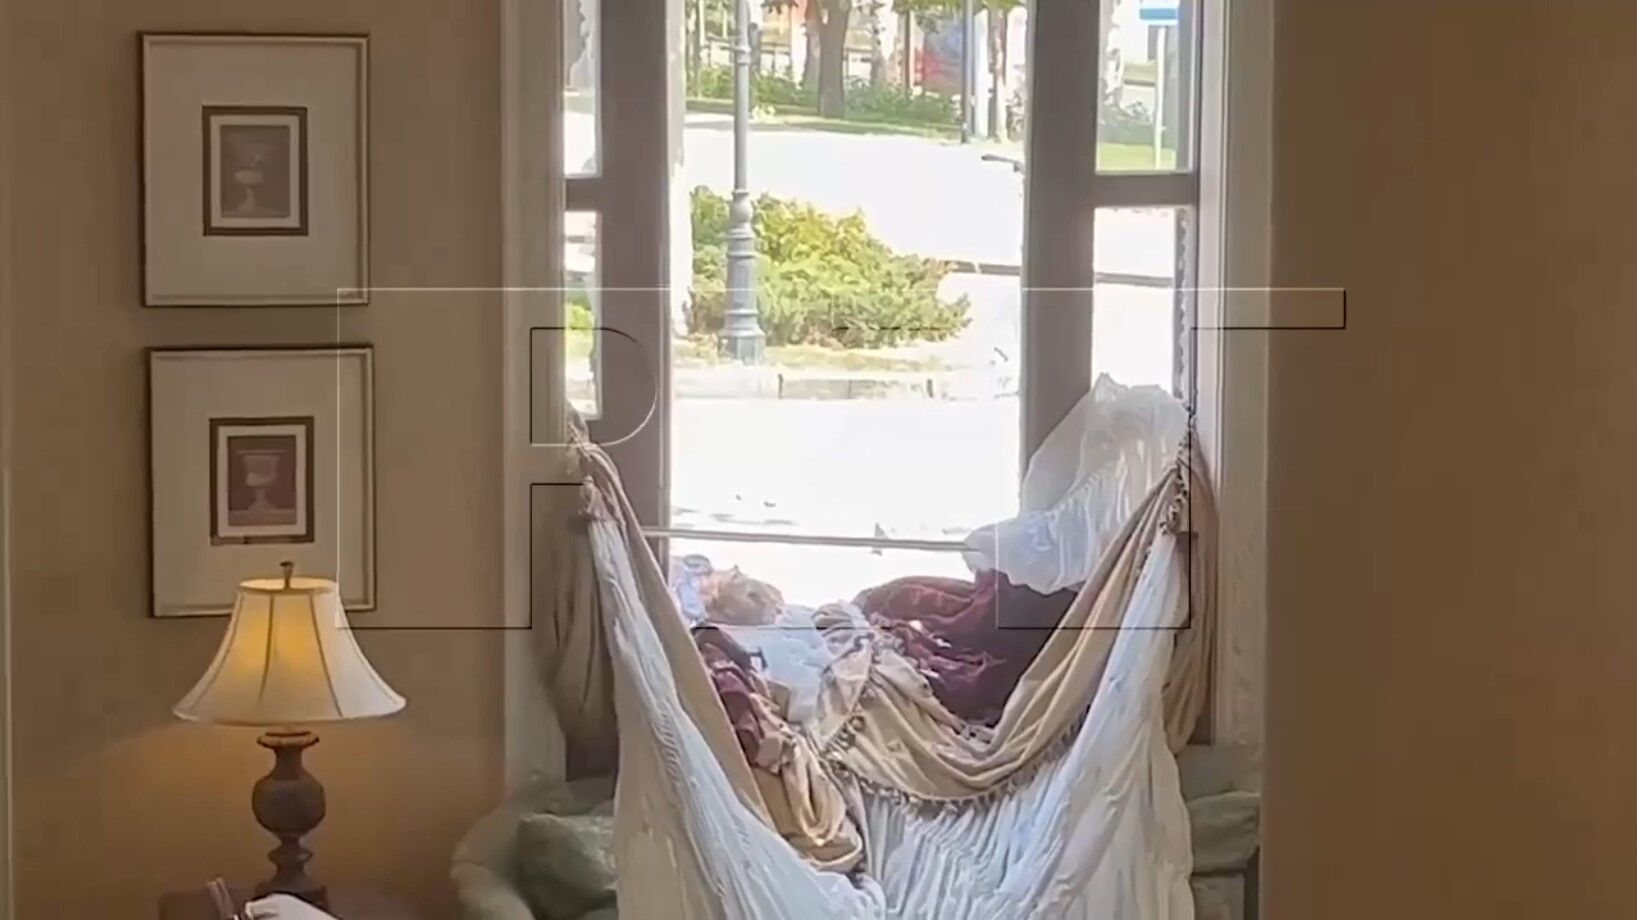 Еще живую женщину на видео оккупанты накрыли простыней с головой, как умершую